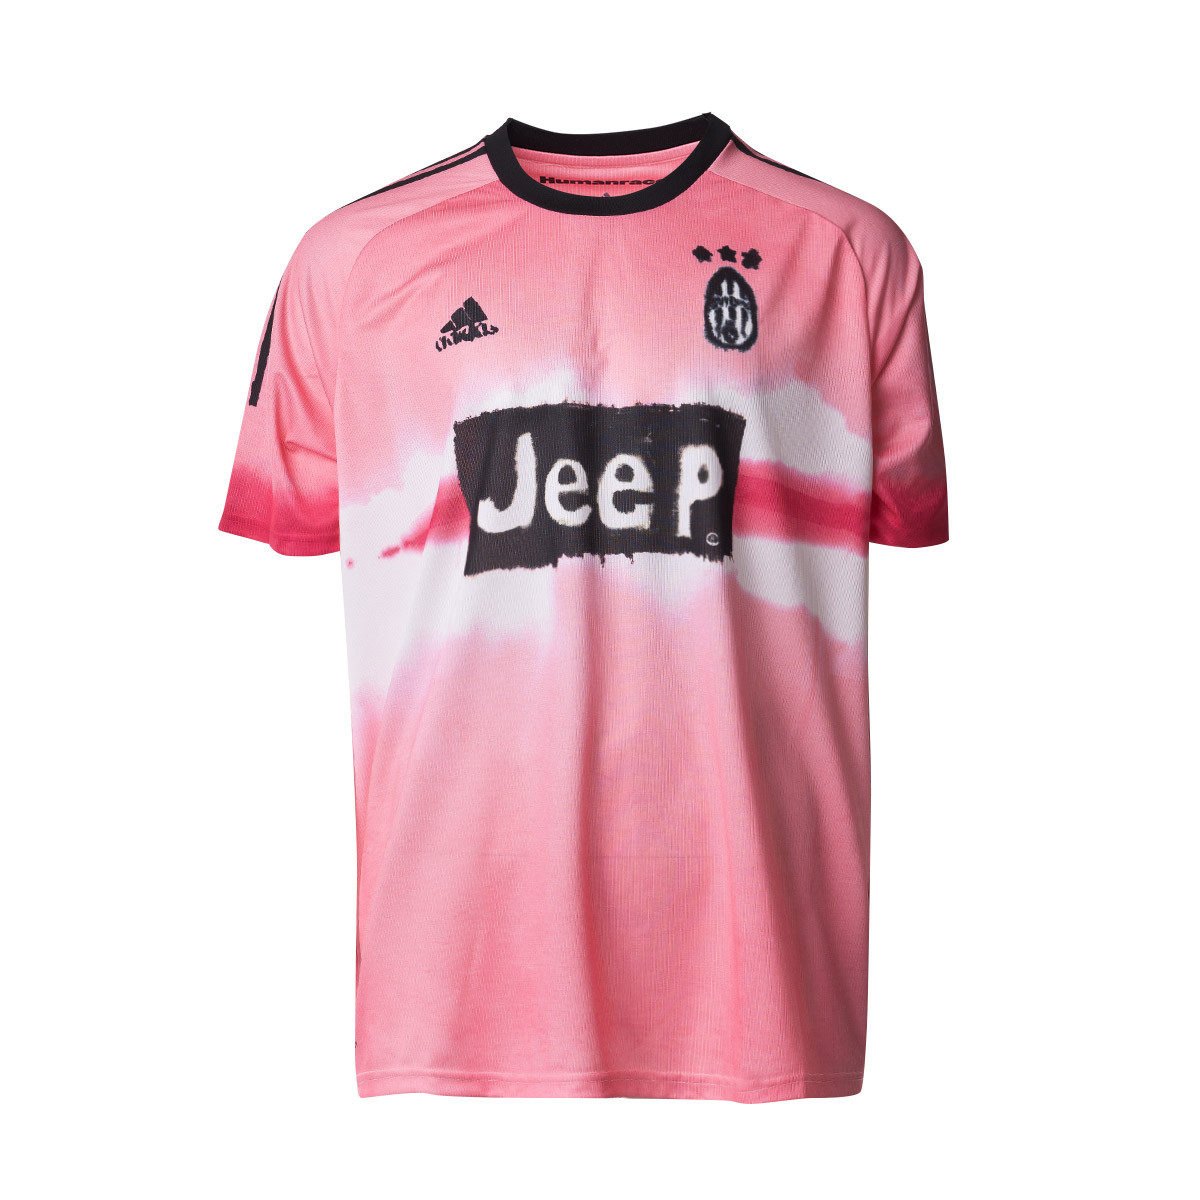 juventus pink black jersey